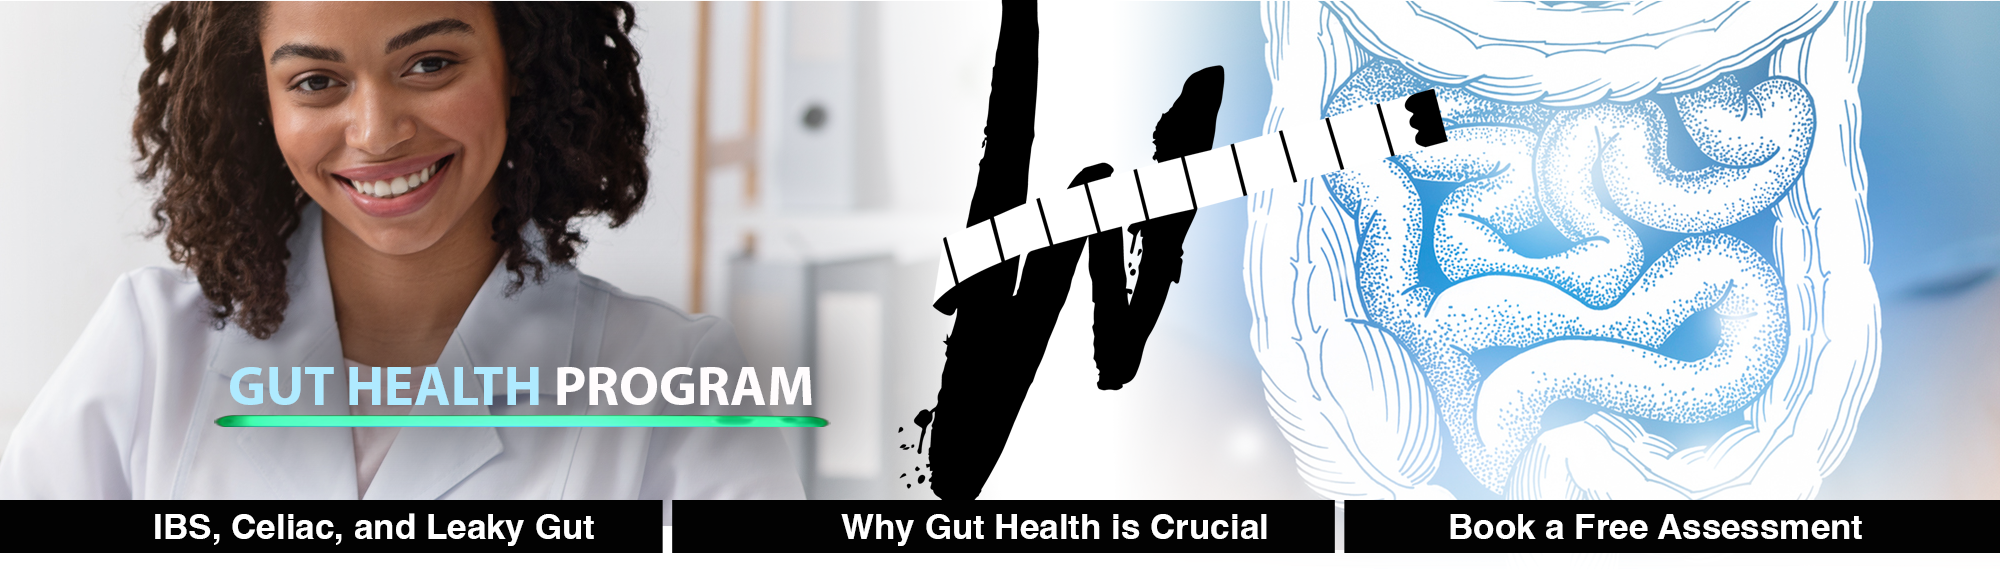 Gut Health Program - Weight Doctor Hero